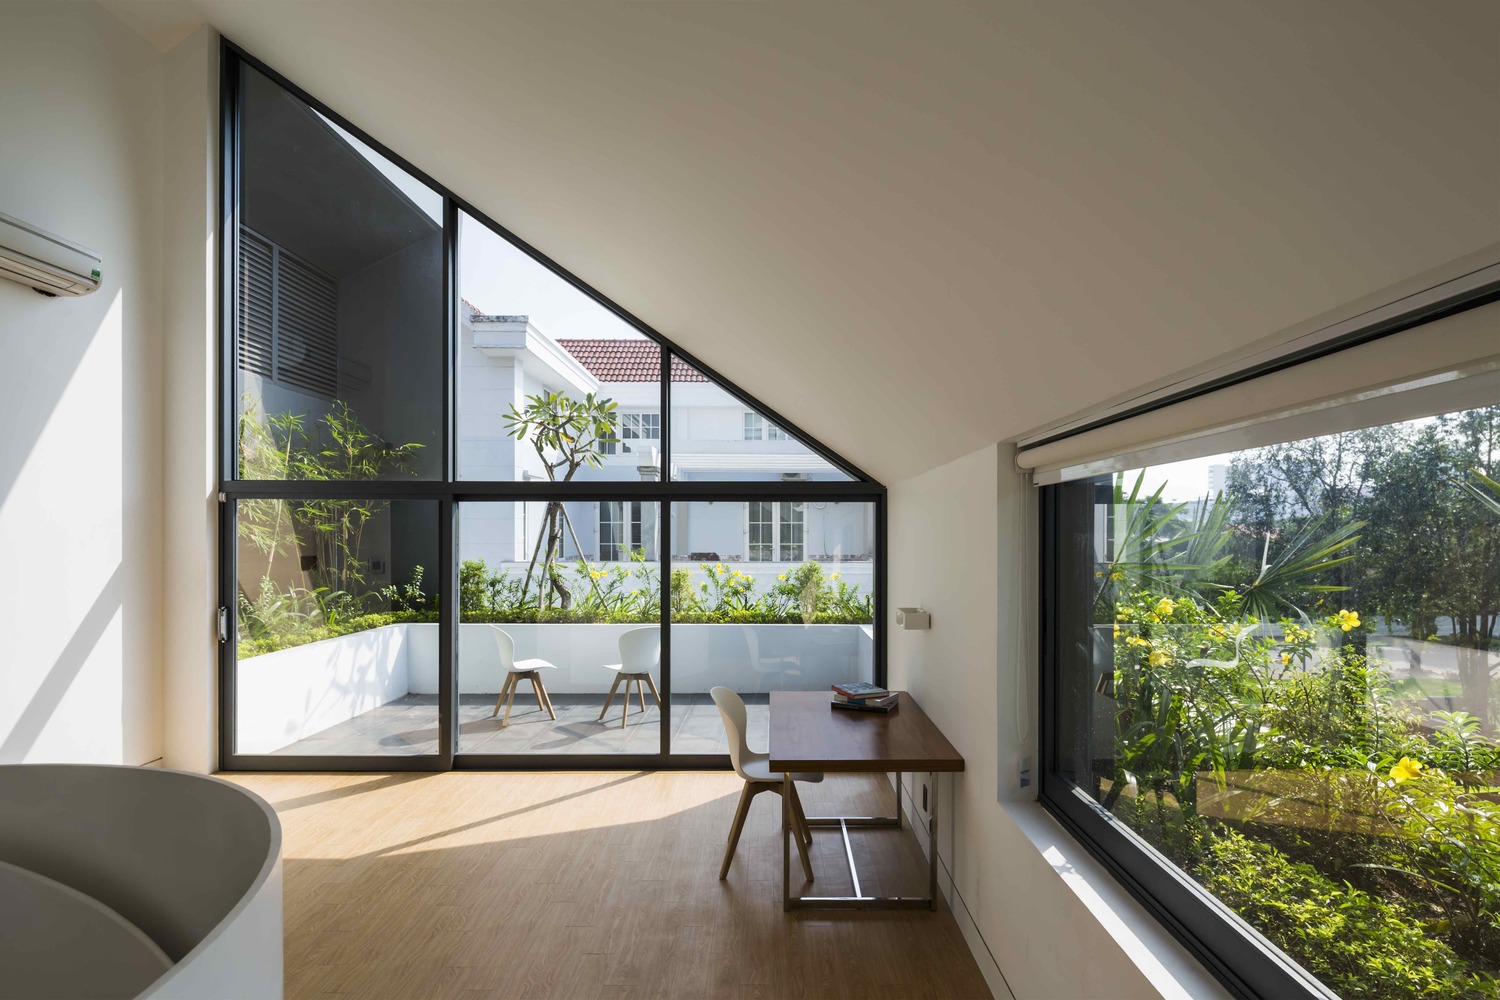 Ngôi nhà như khối lập phương trắng độc đáo cùng sắc xanh cây cối nổi bật giữa “khu nhà giàu” Sài Gòn - Ảnh 19